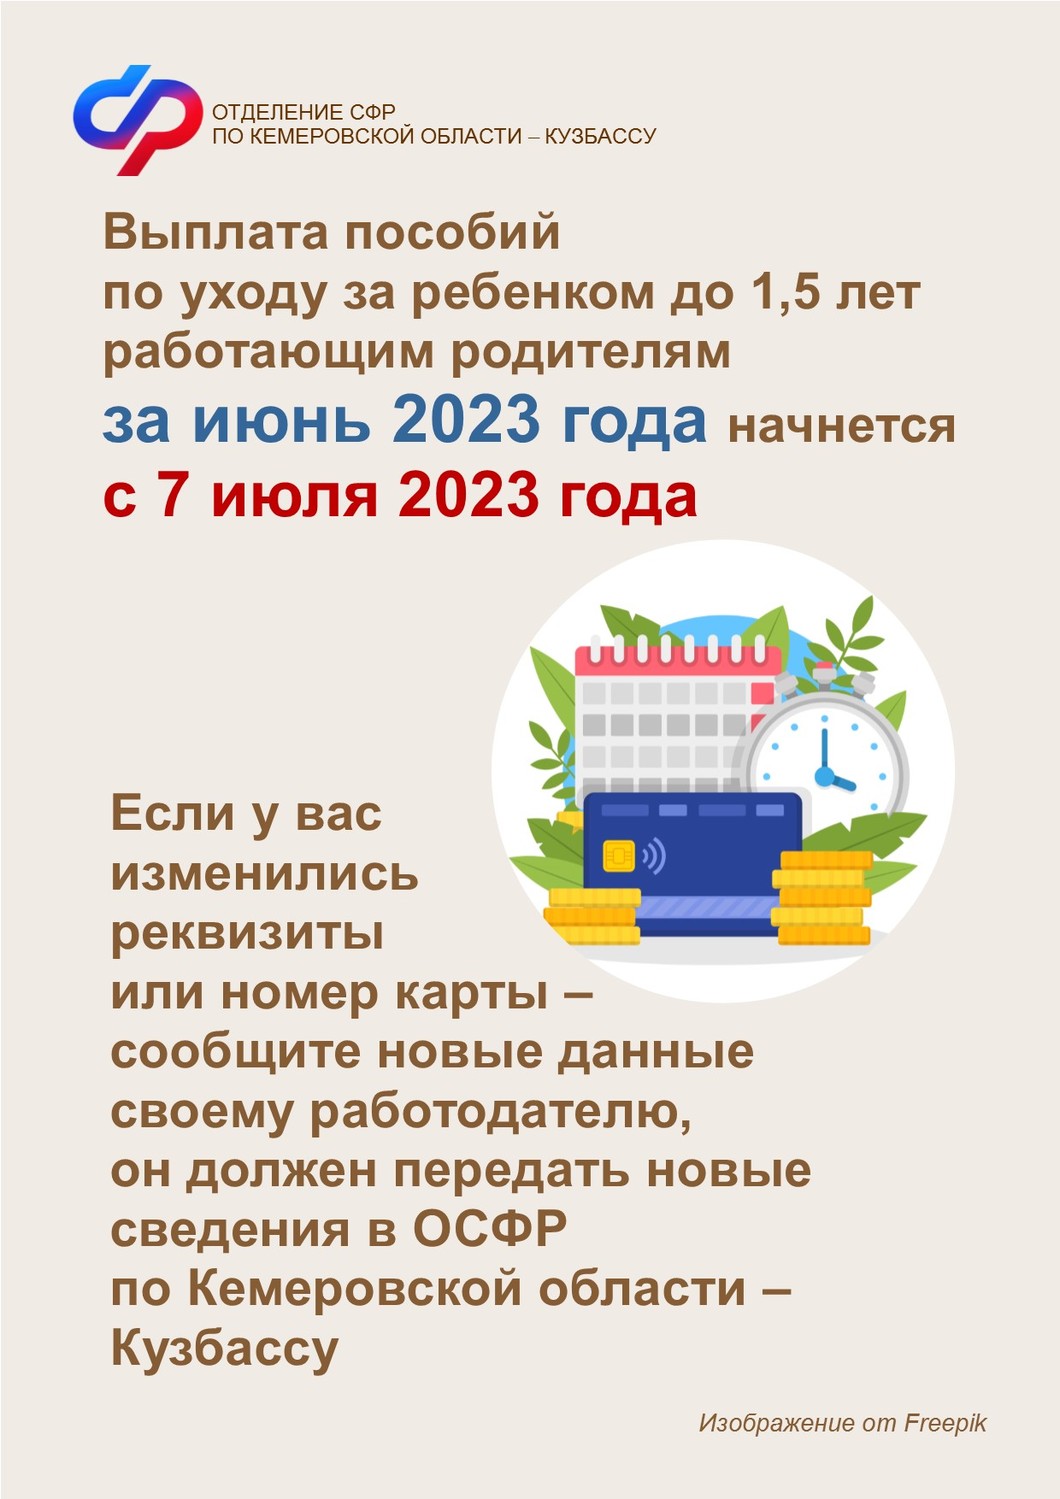 Выплата пособий по уходу за ребенком до 1,5 лет работающим родителям за июнь 2023 года